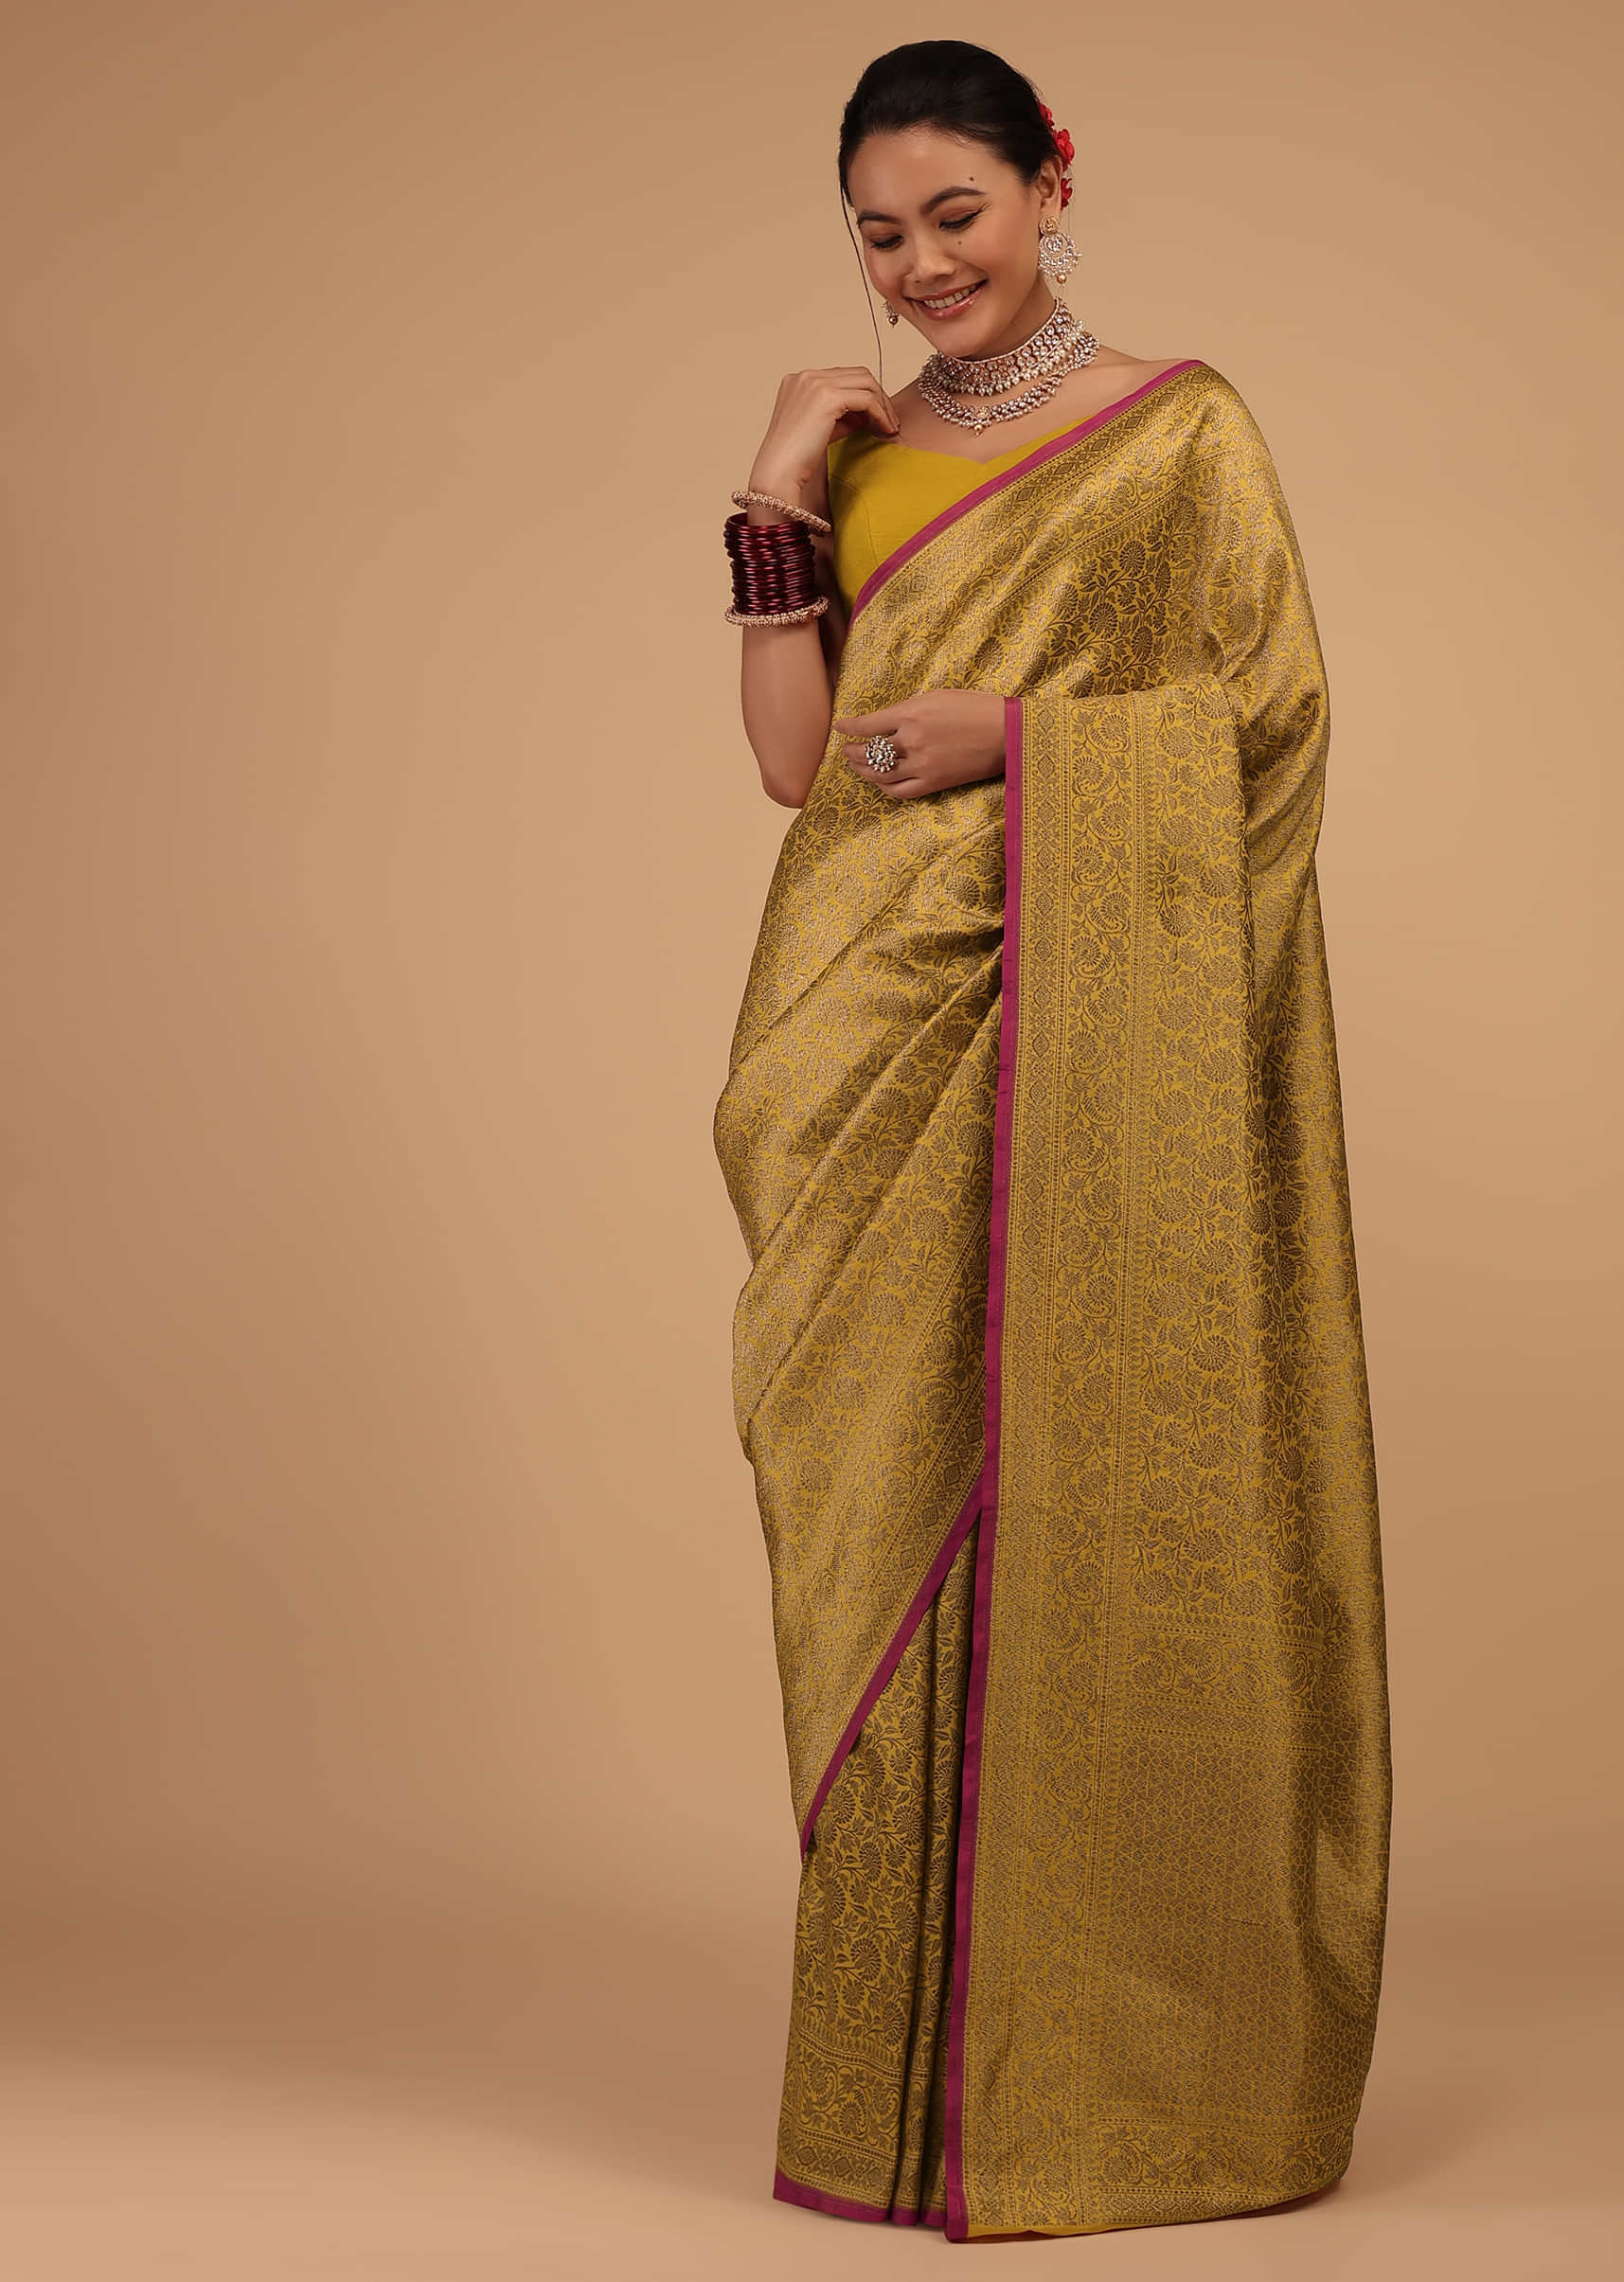 Gold Yellow Saree In Pure Banarasi Silk With Upada Zari Weave Floral Jaal Work